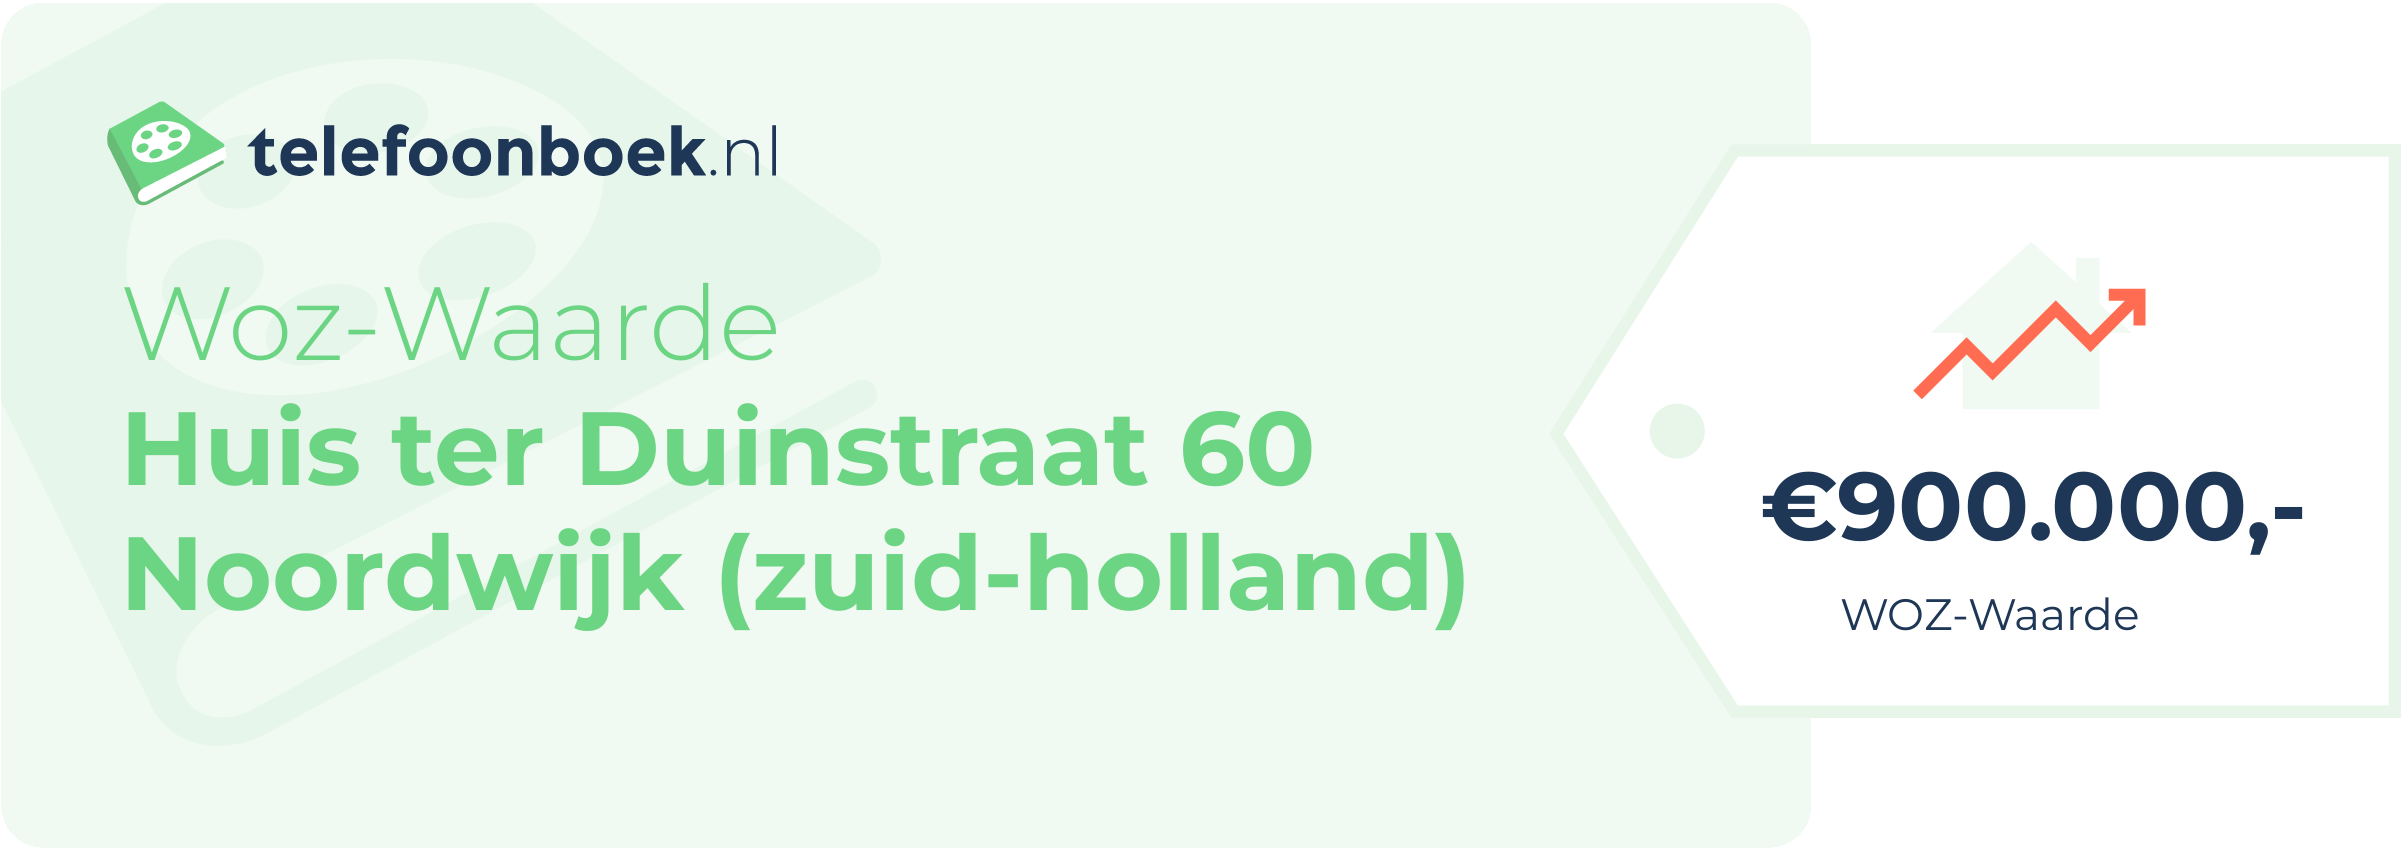 WOZ-waarde Huis Ter Duinstraat 60 Noordwijk (Zuid-Holland)